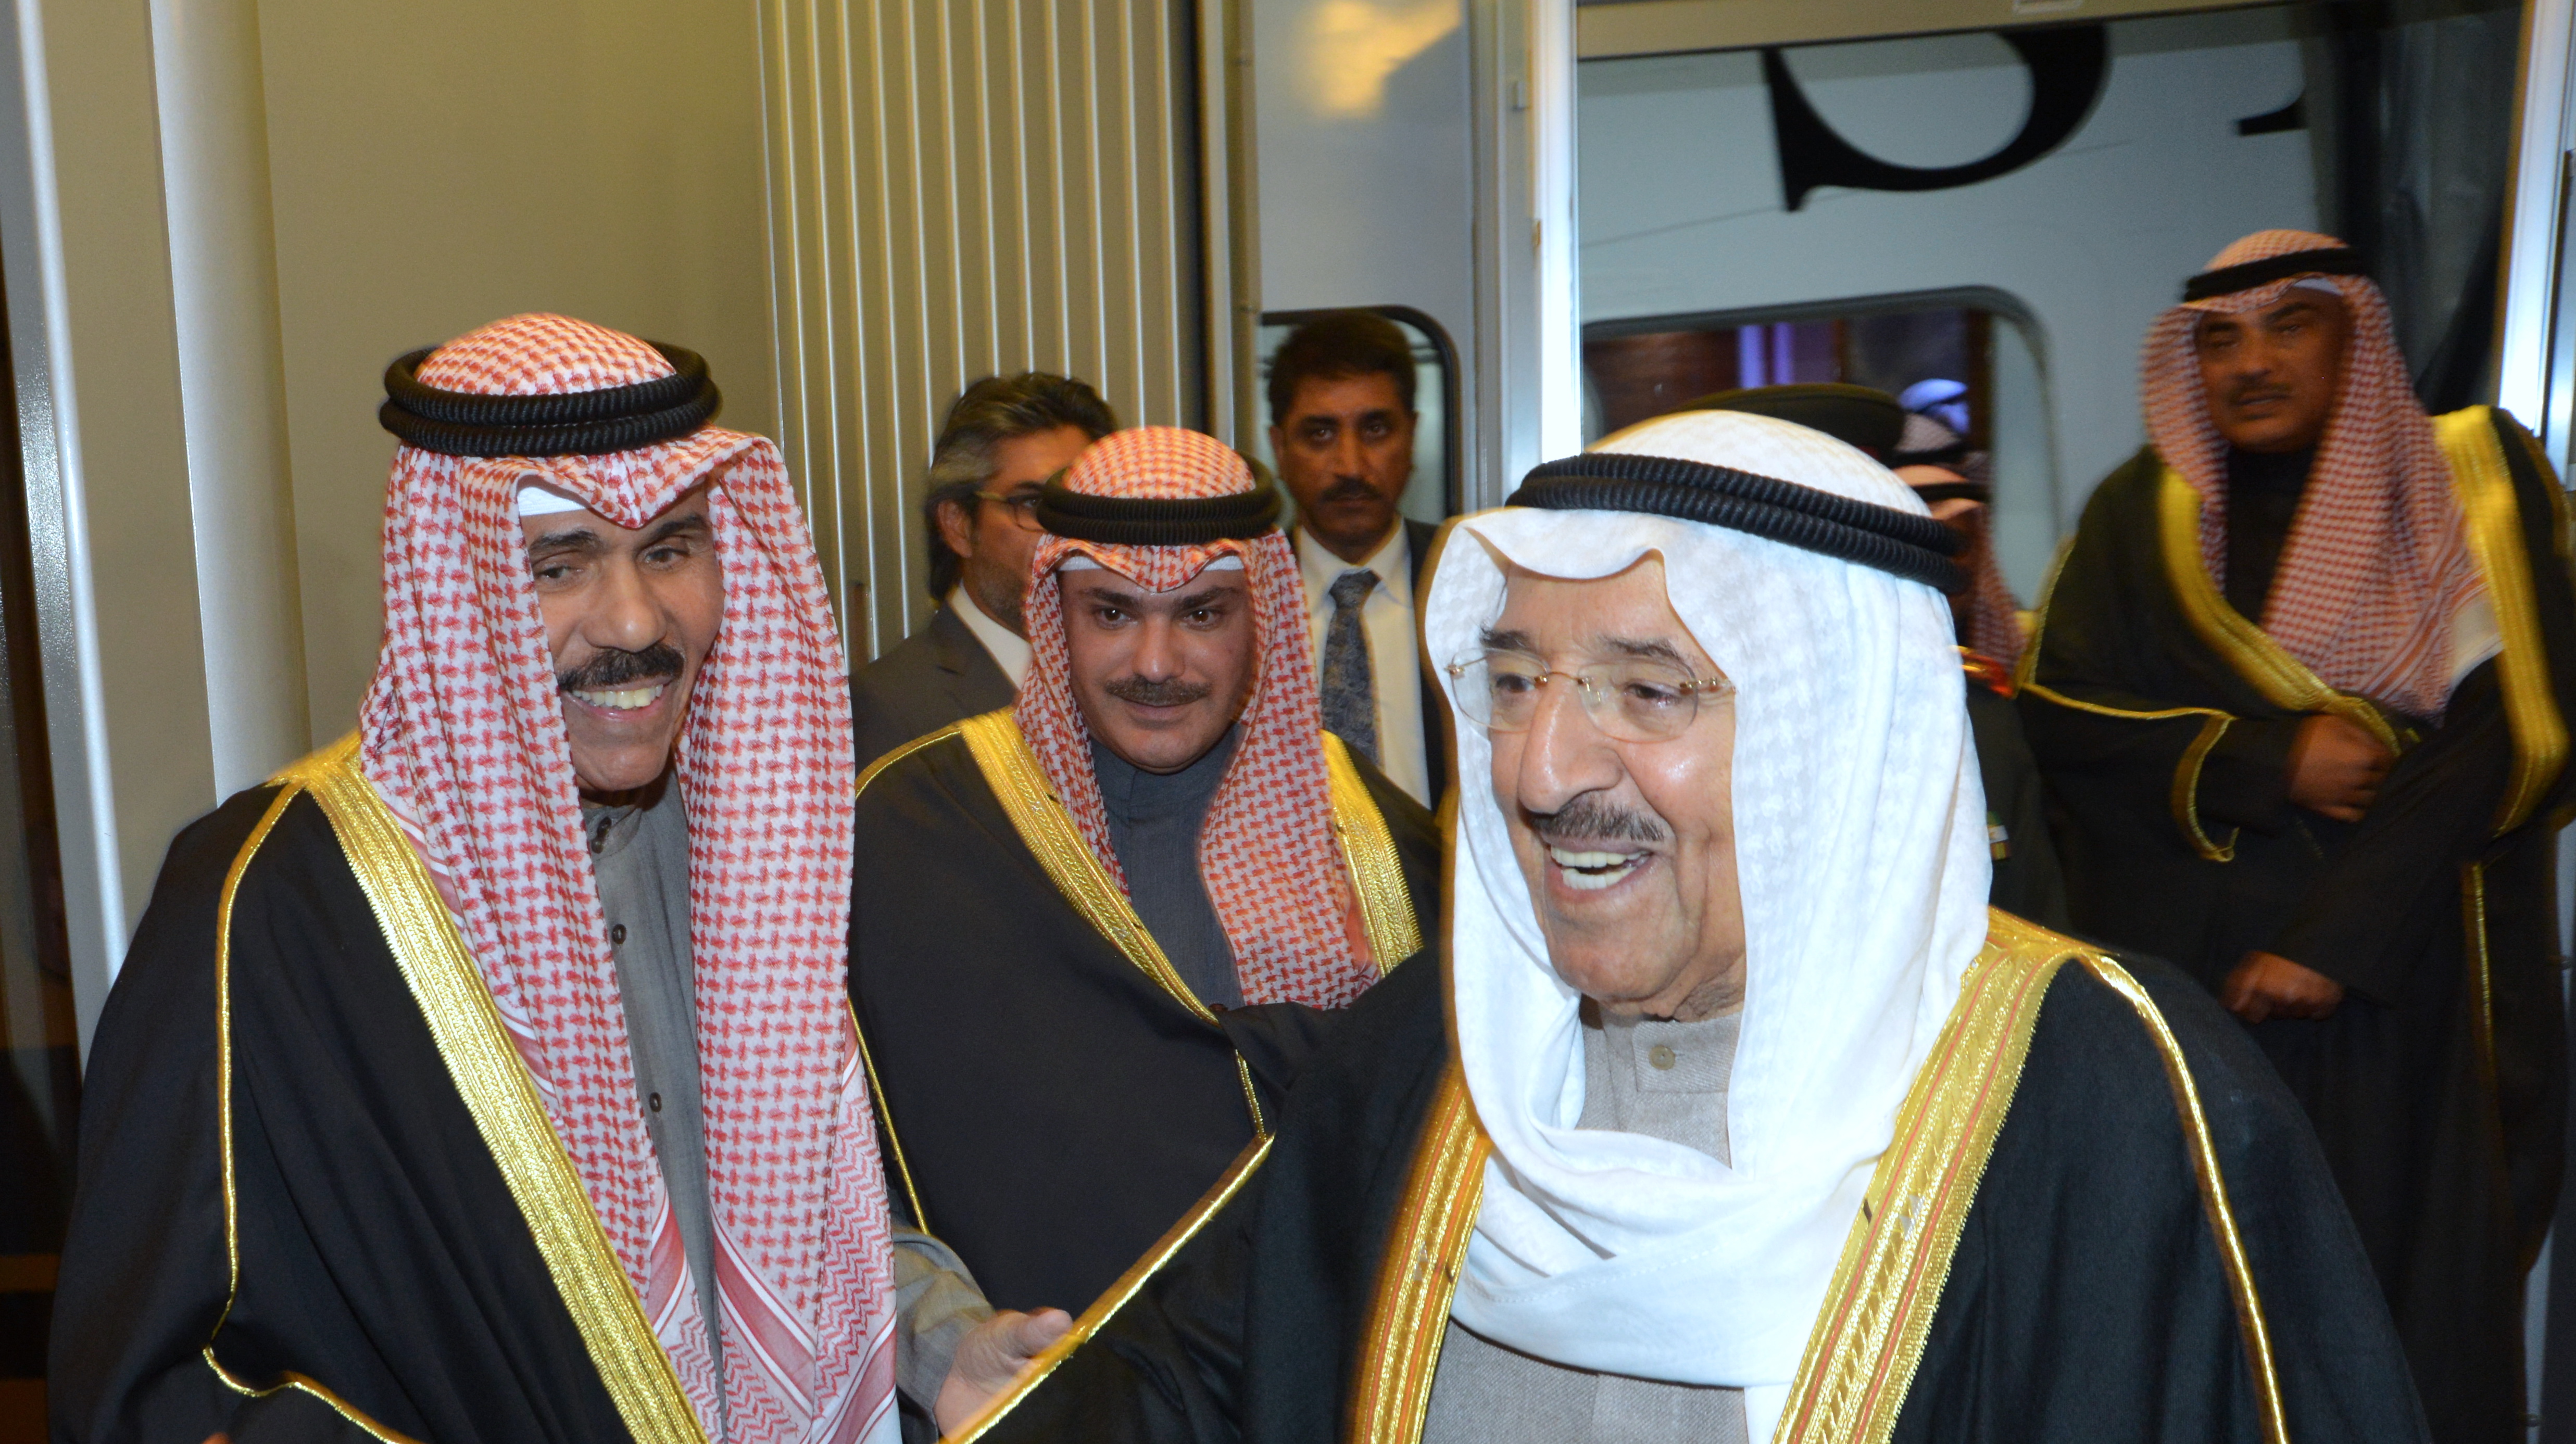 His Highness the Amir Sheikh Sabah Al-Ahmad Al-Jaber Al-Sabah arrived back after attending OIC urgent summit